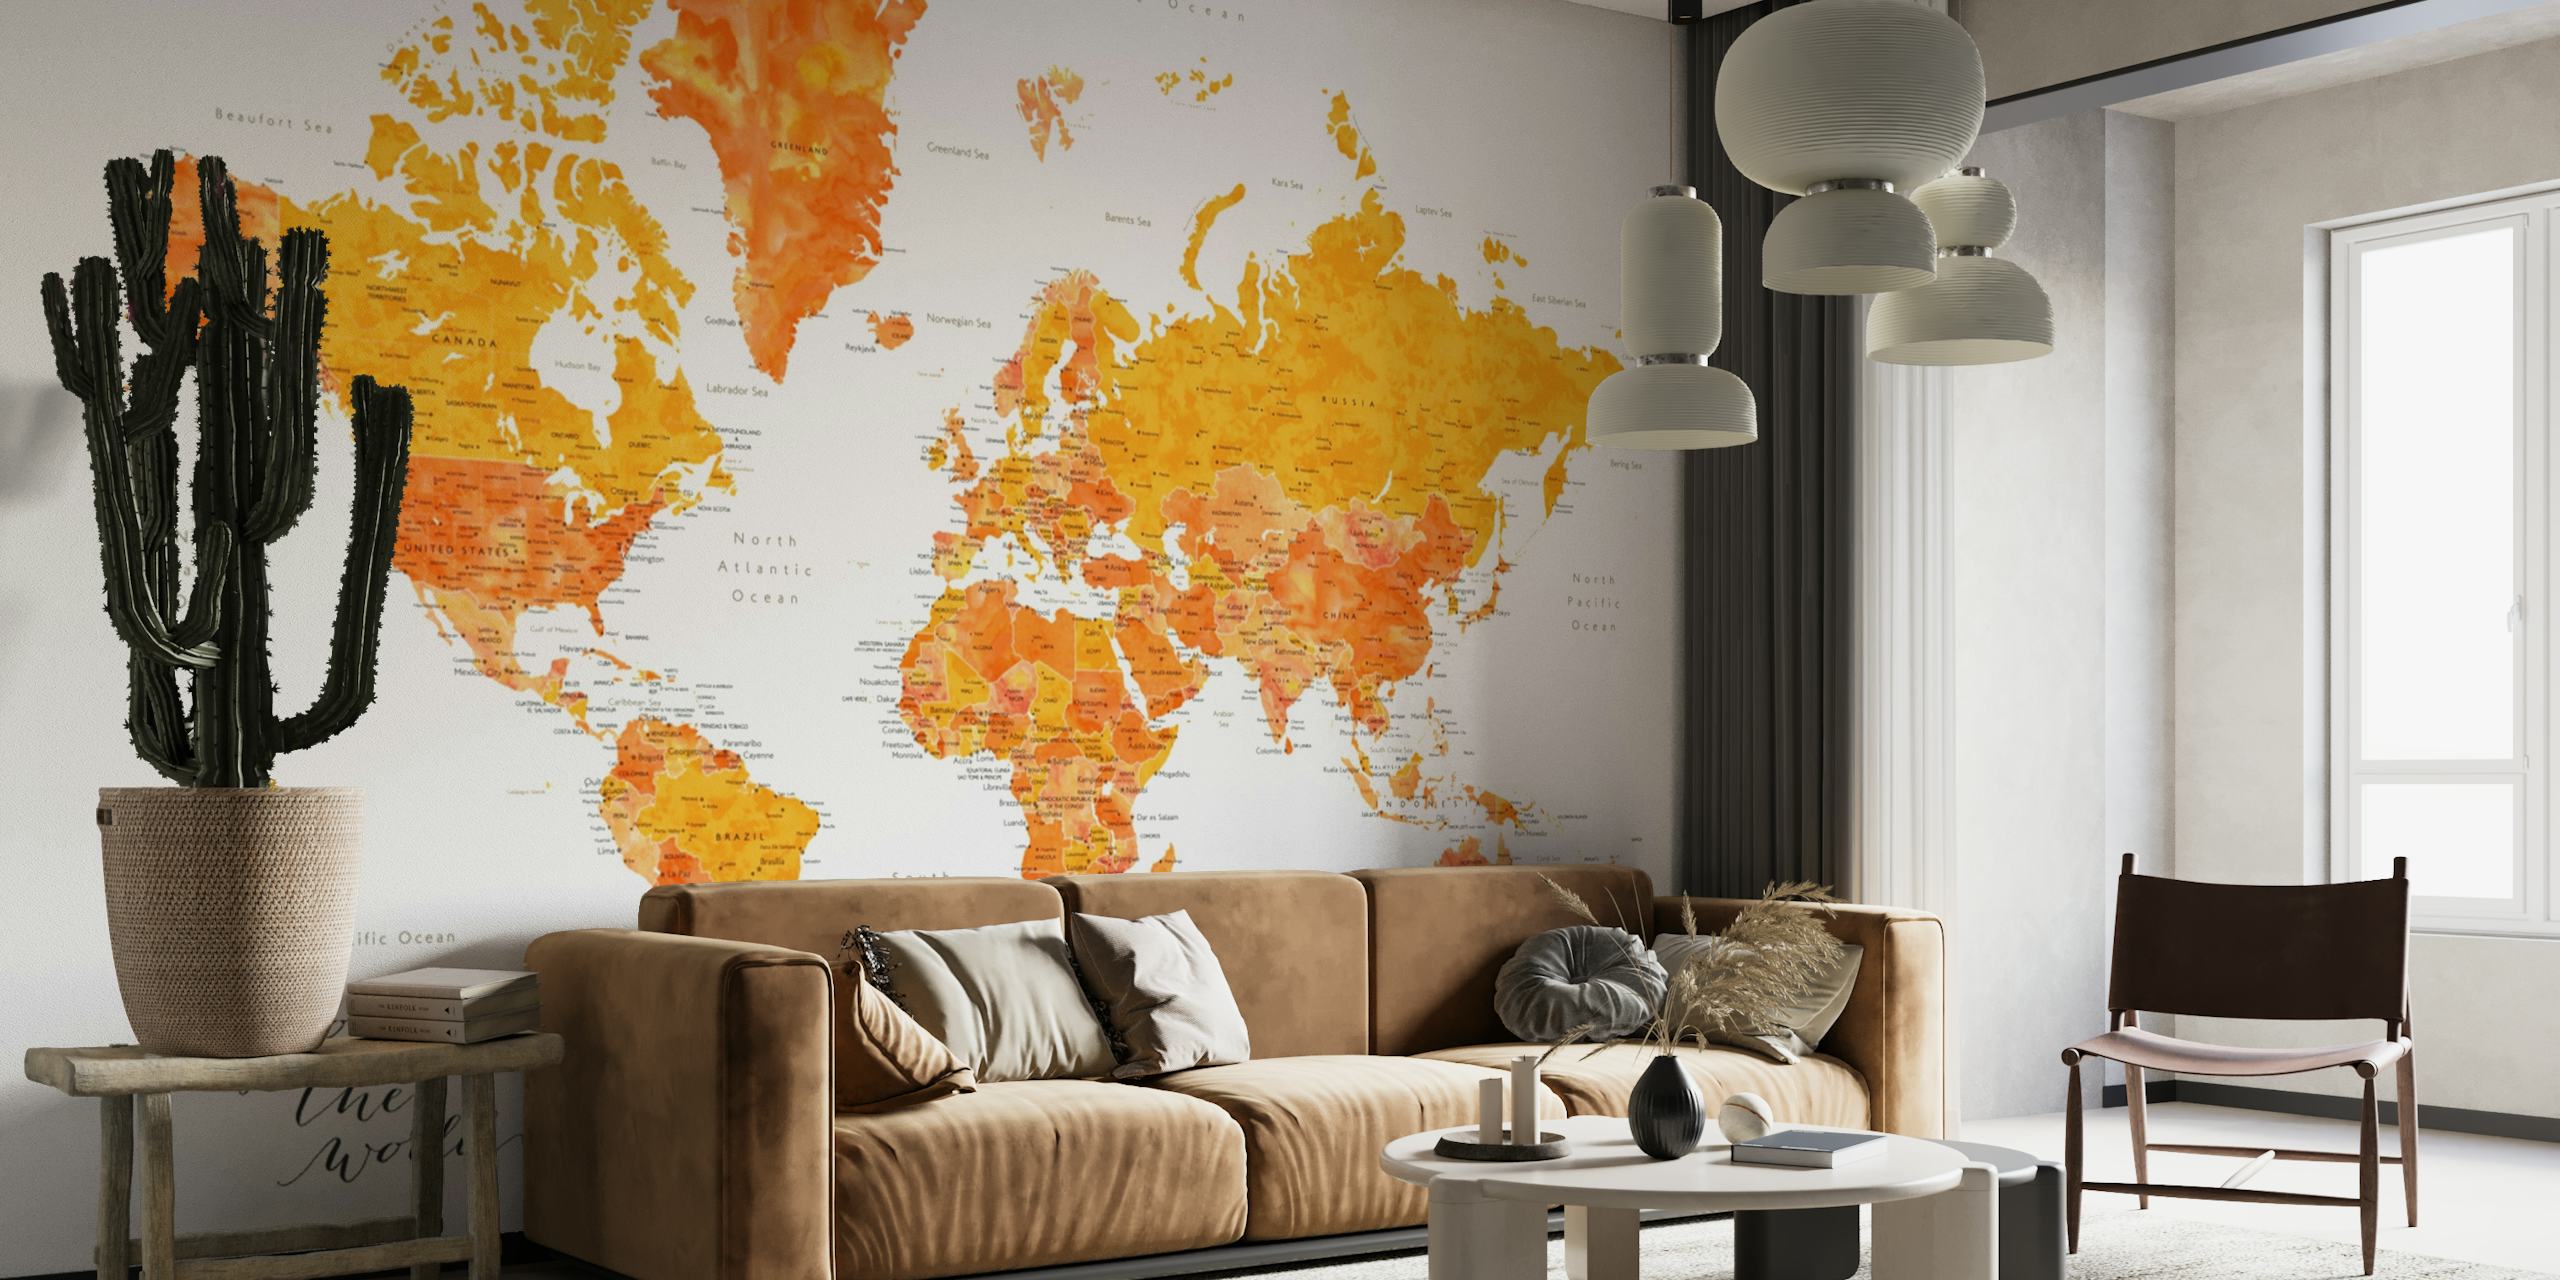 Orange och gul världskarta tapet med titeln "Utforska världen Carlotta"